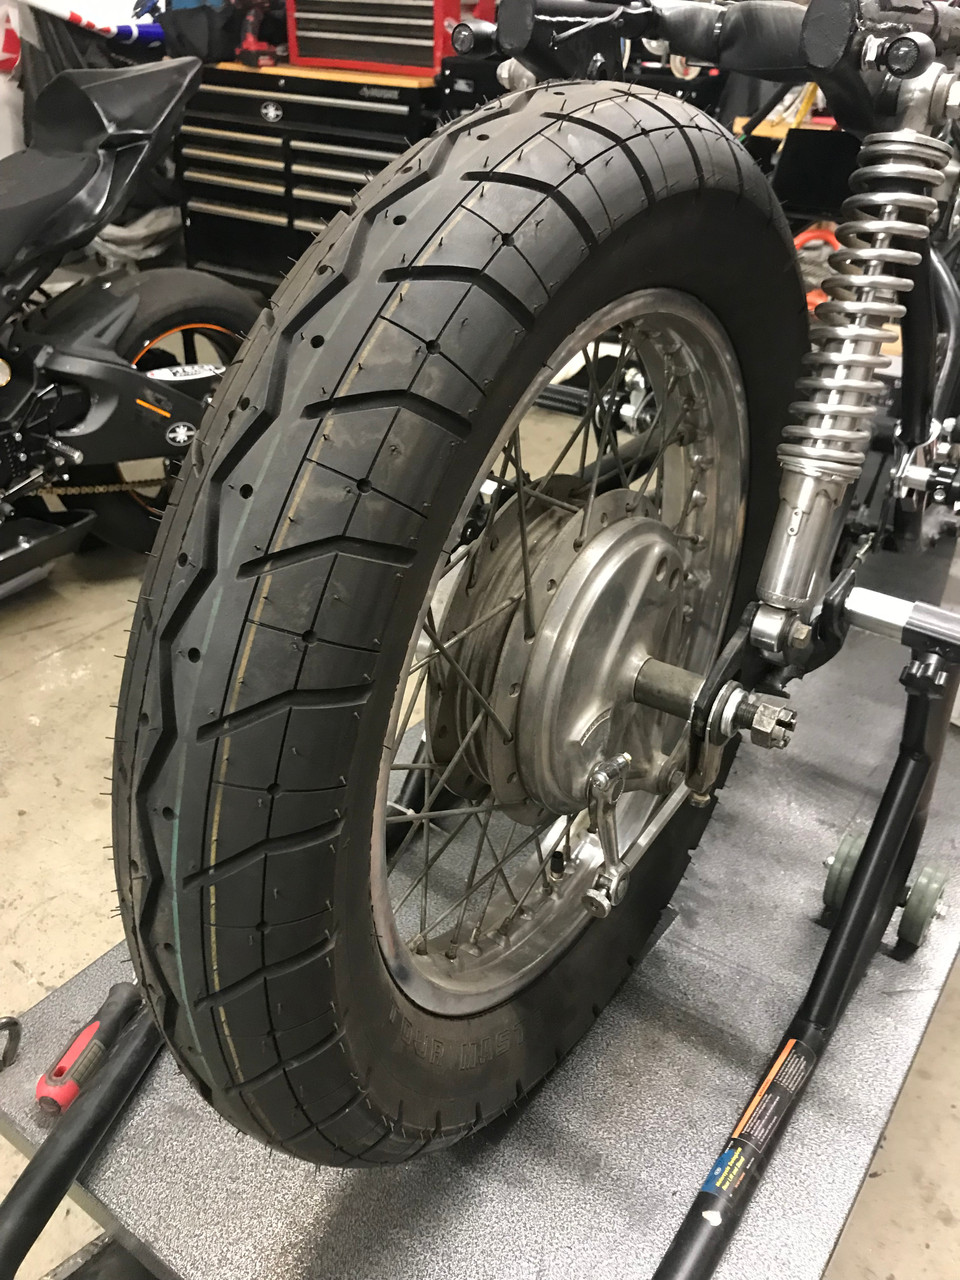 shinko 230 tour master tire review